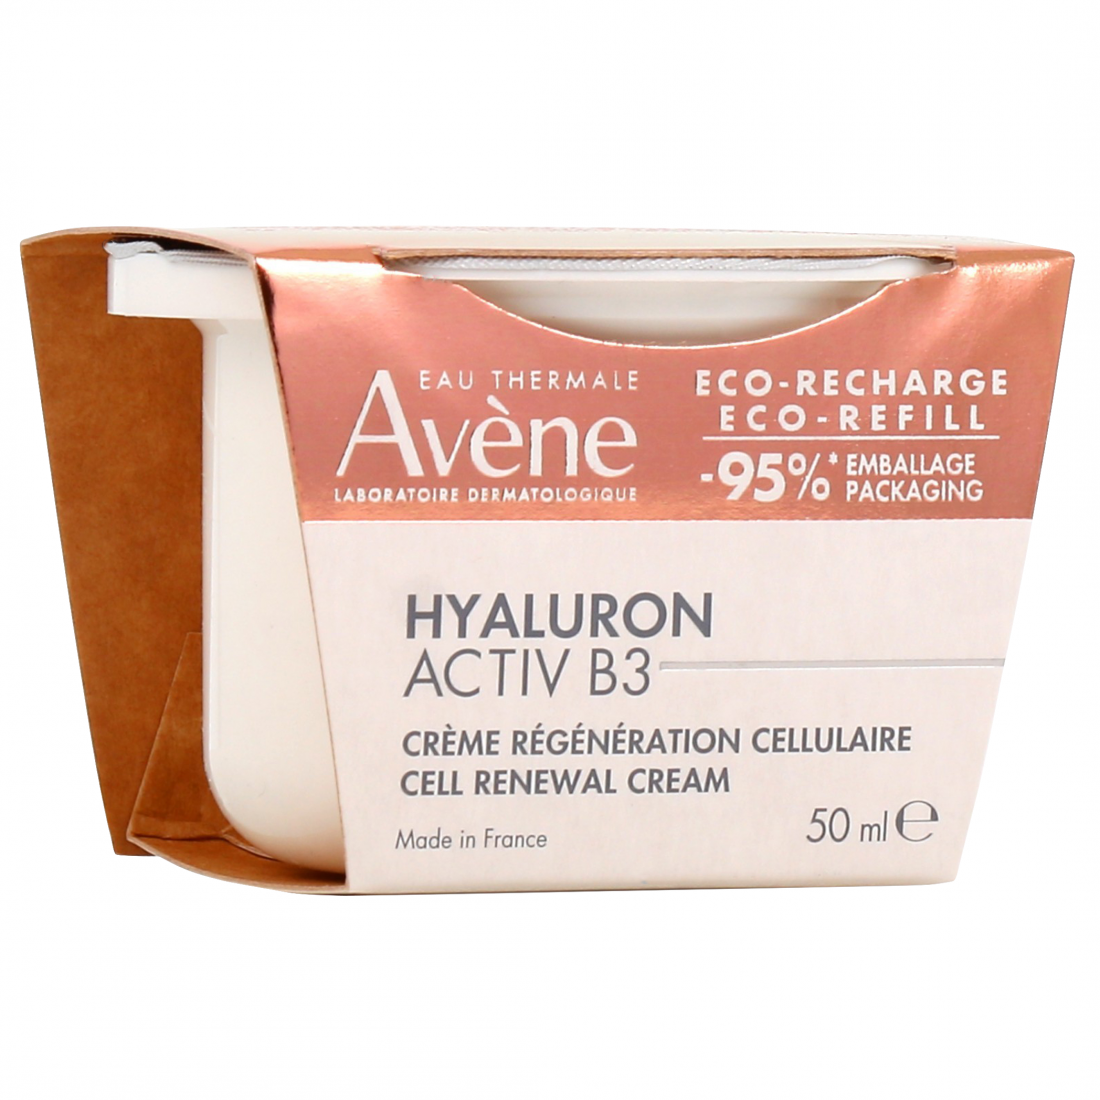 HYALURON ACTIV B3 aqua-gel crema renovación celular recarga 50 ml